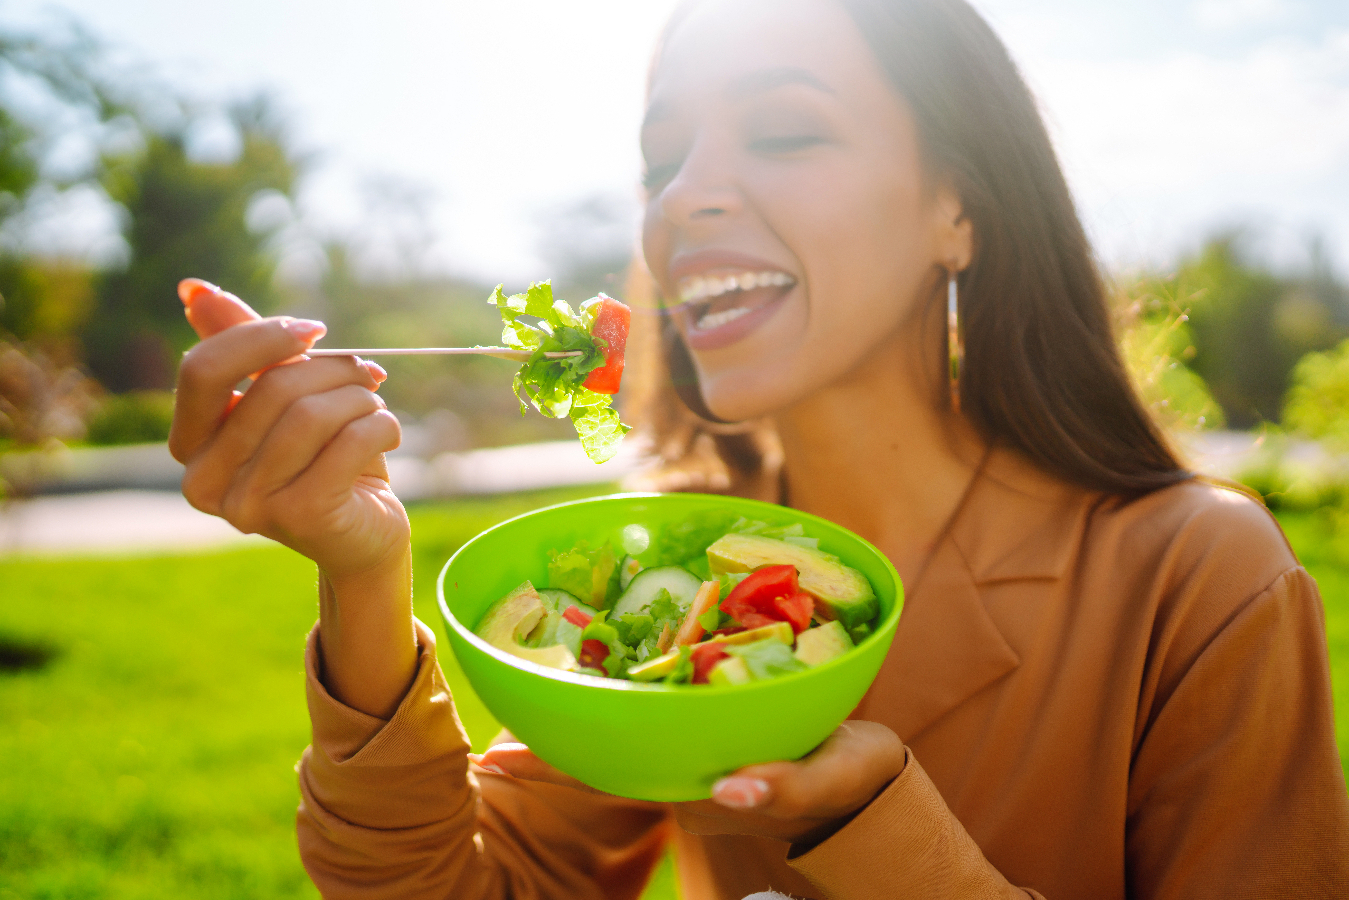 A recomendação é priorizar uma dieta equilibrada com alimentos integrais, frutas, vegetais e proteínas magras